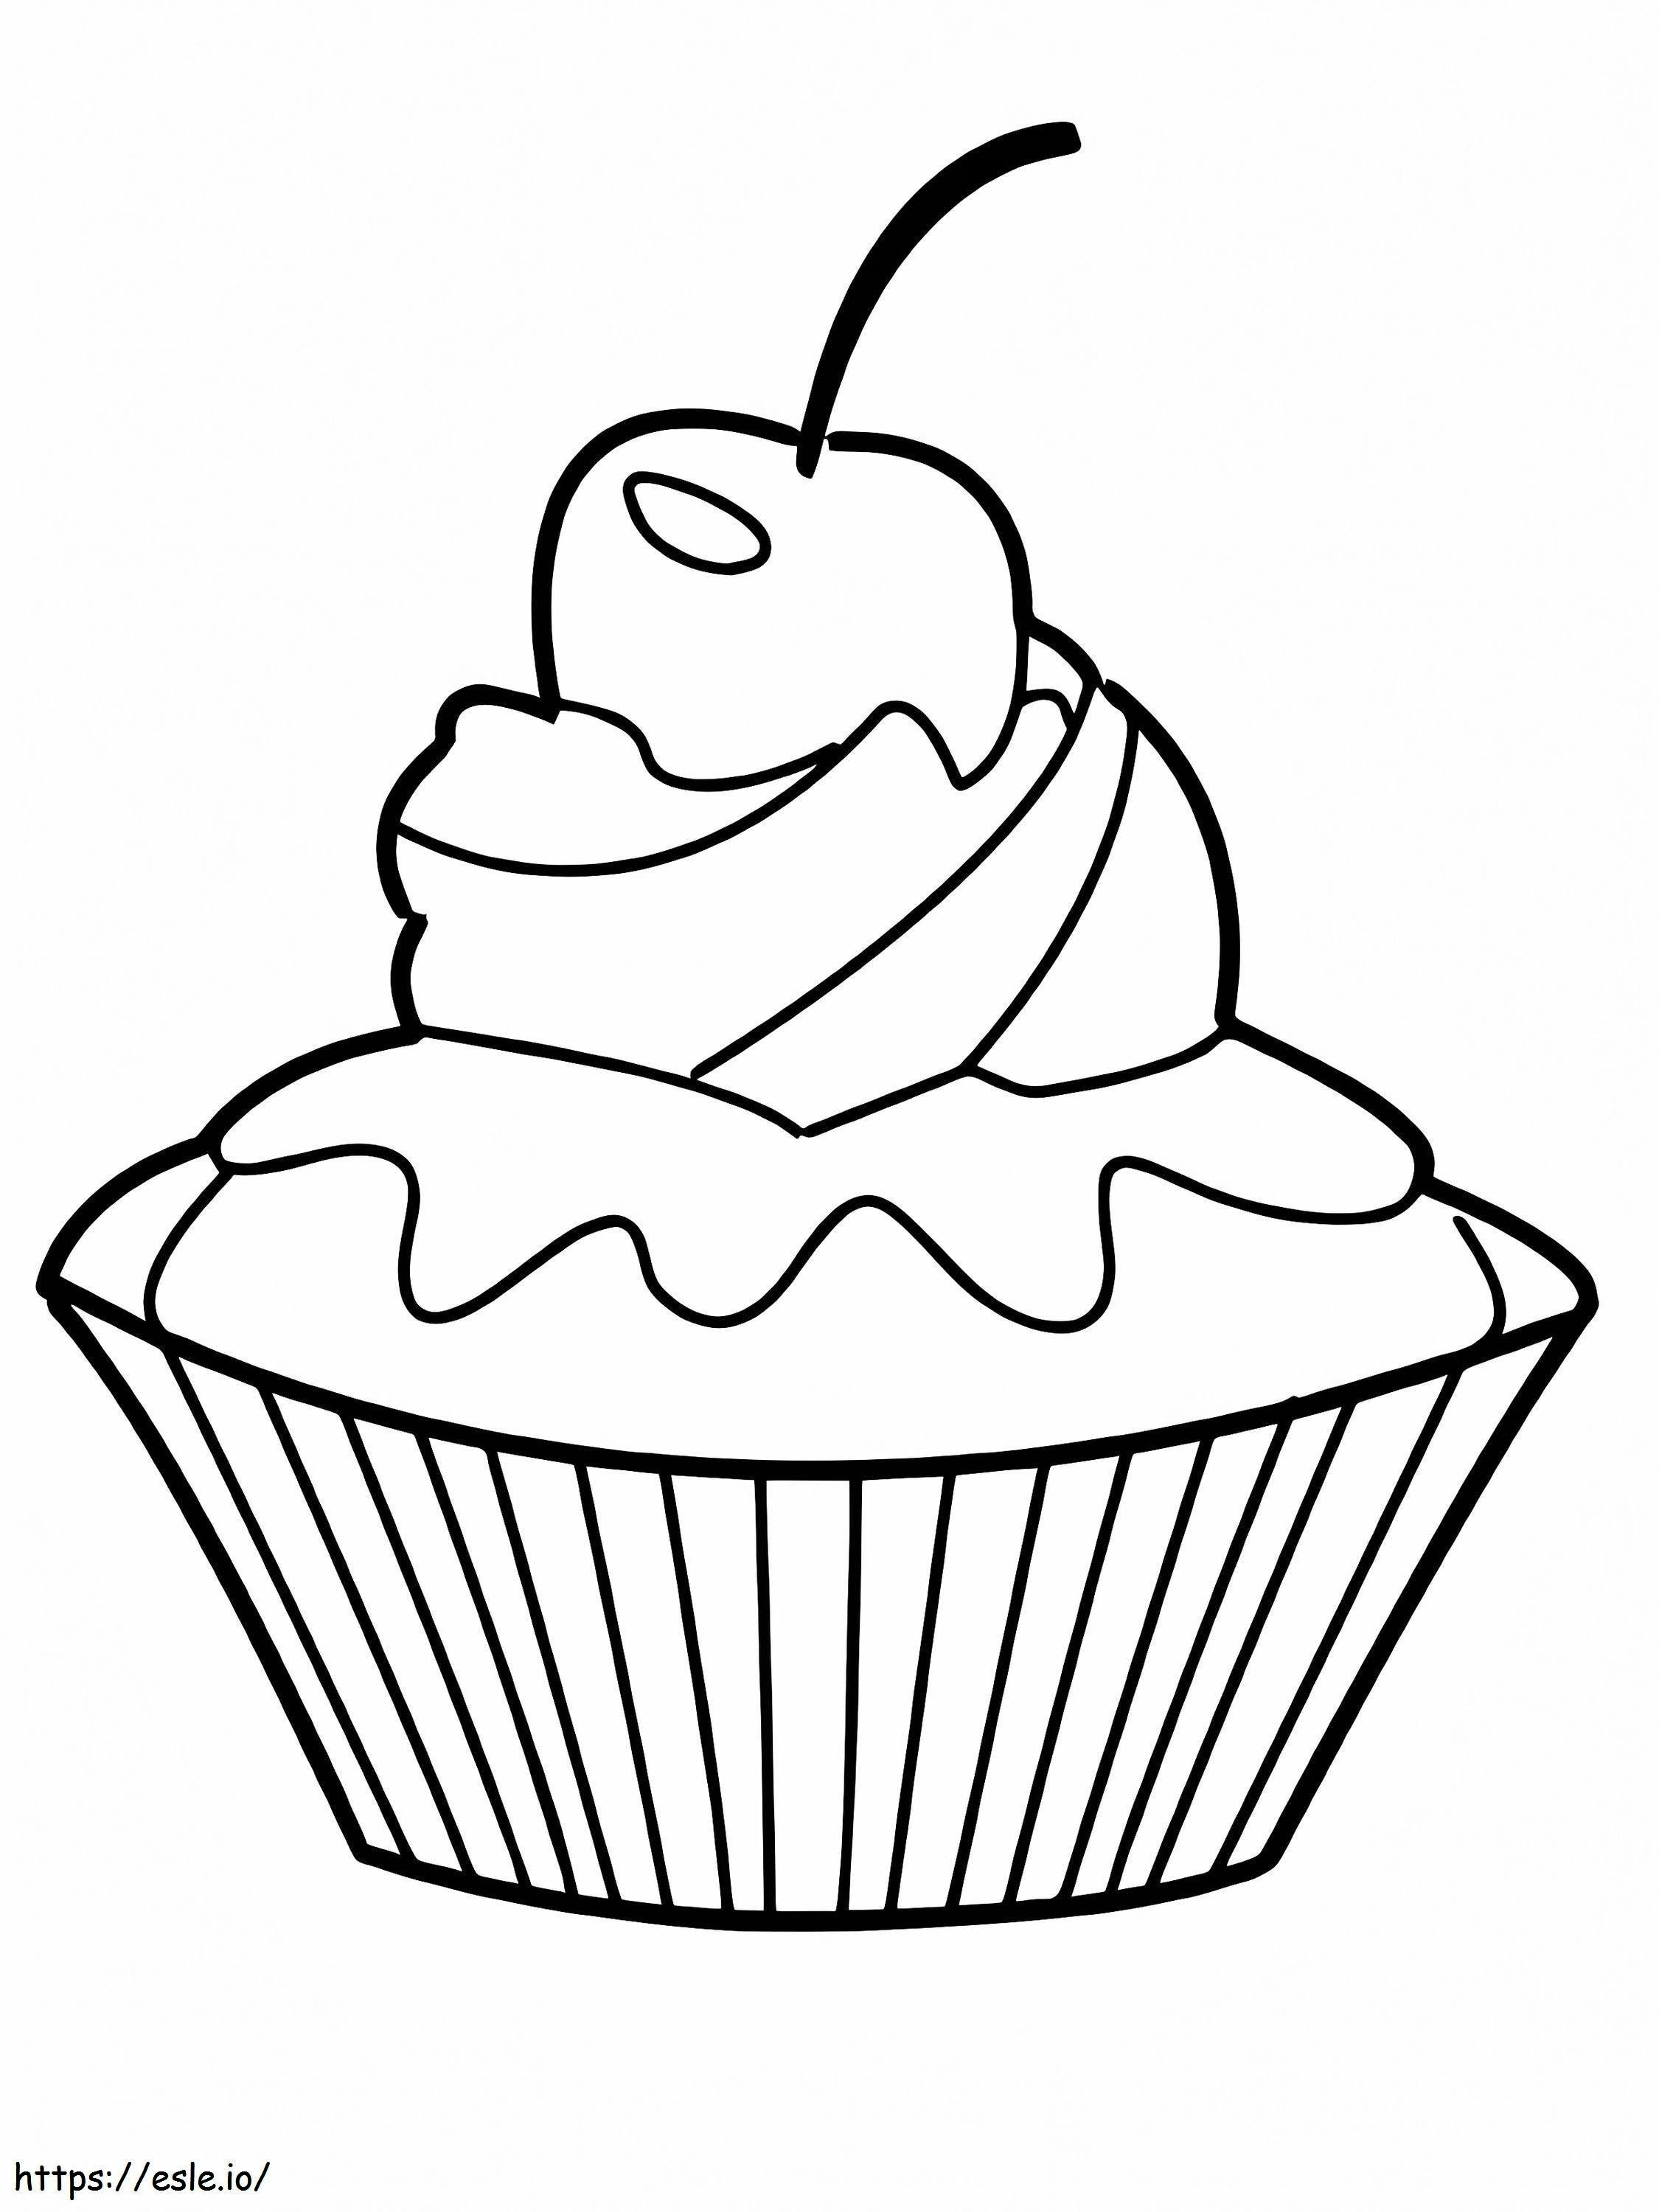 Einfacher Cupcake ausmalbilder